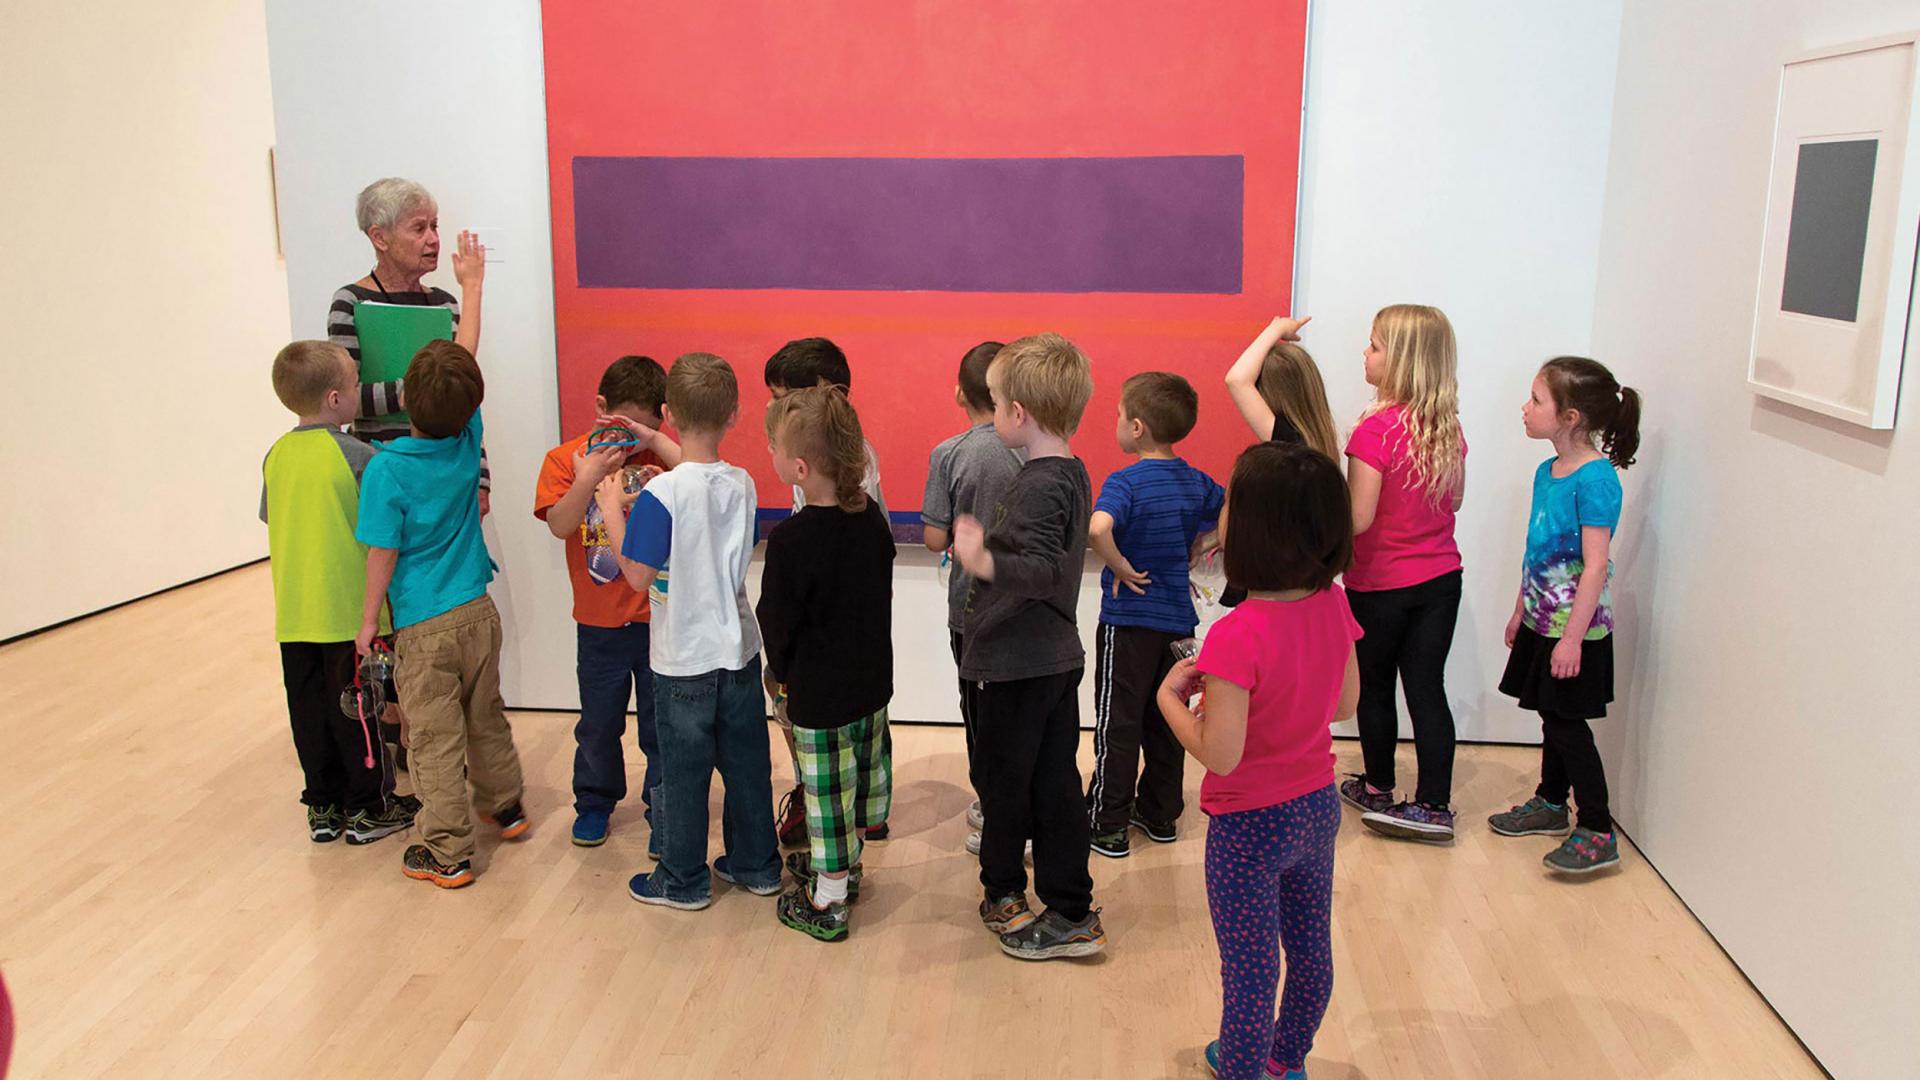 Children getting a tour of an art gallery